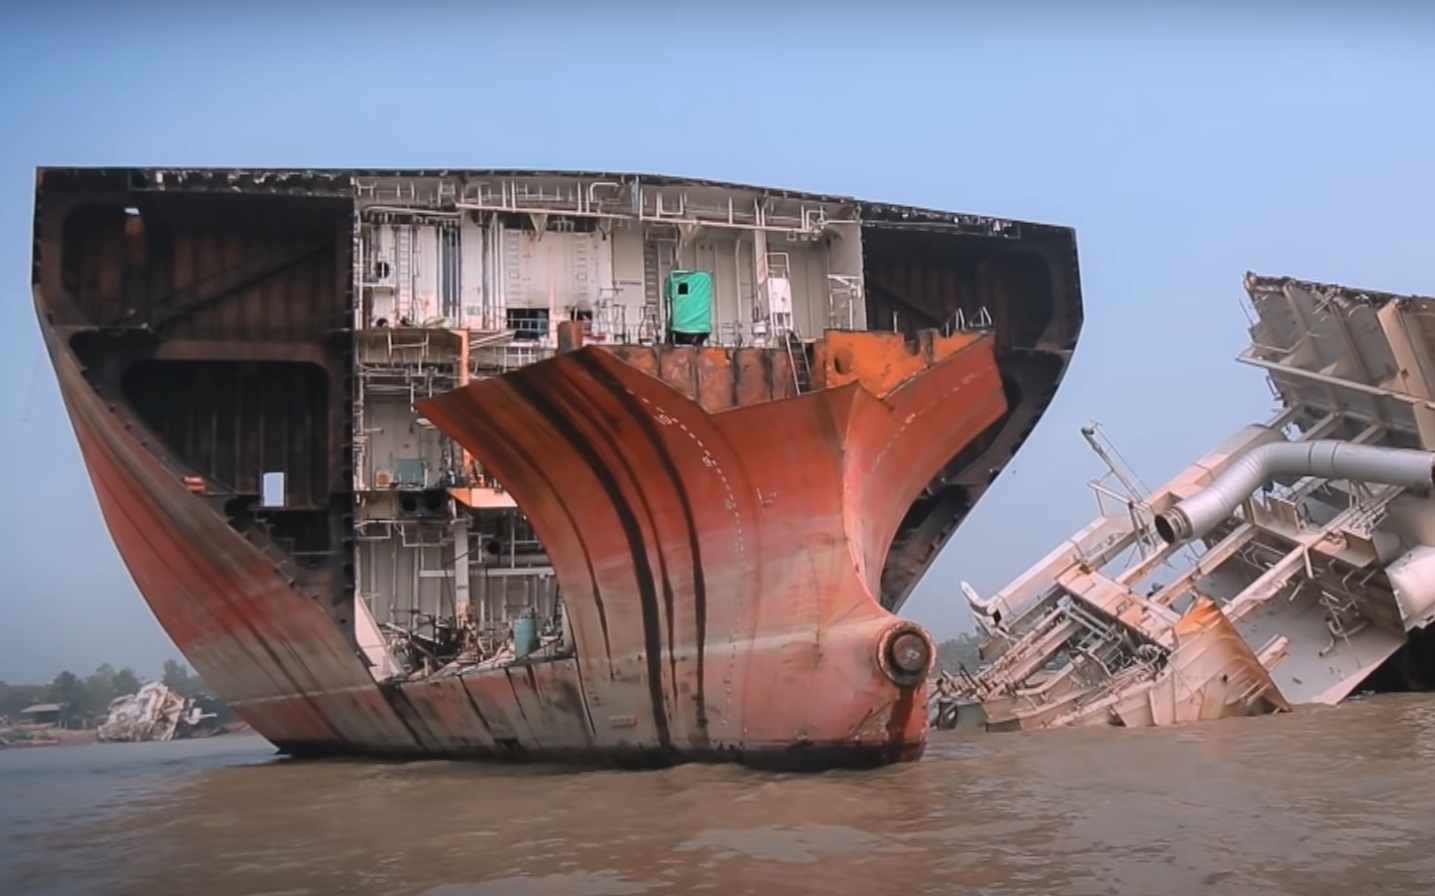 Разборка кораблей считается одной из самых опасных работ в мире